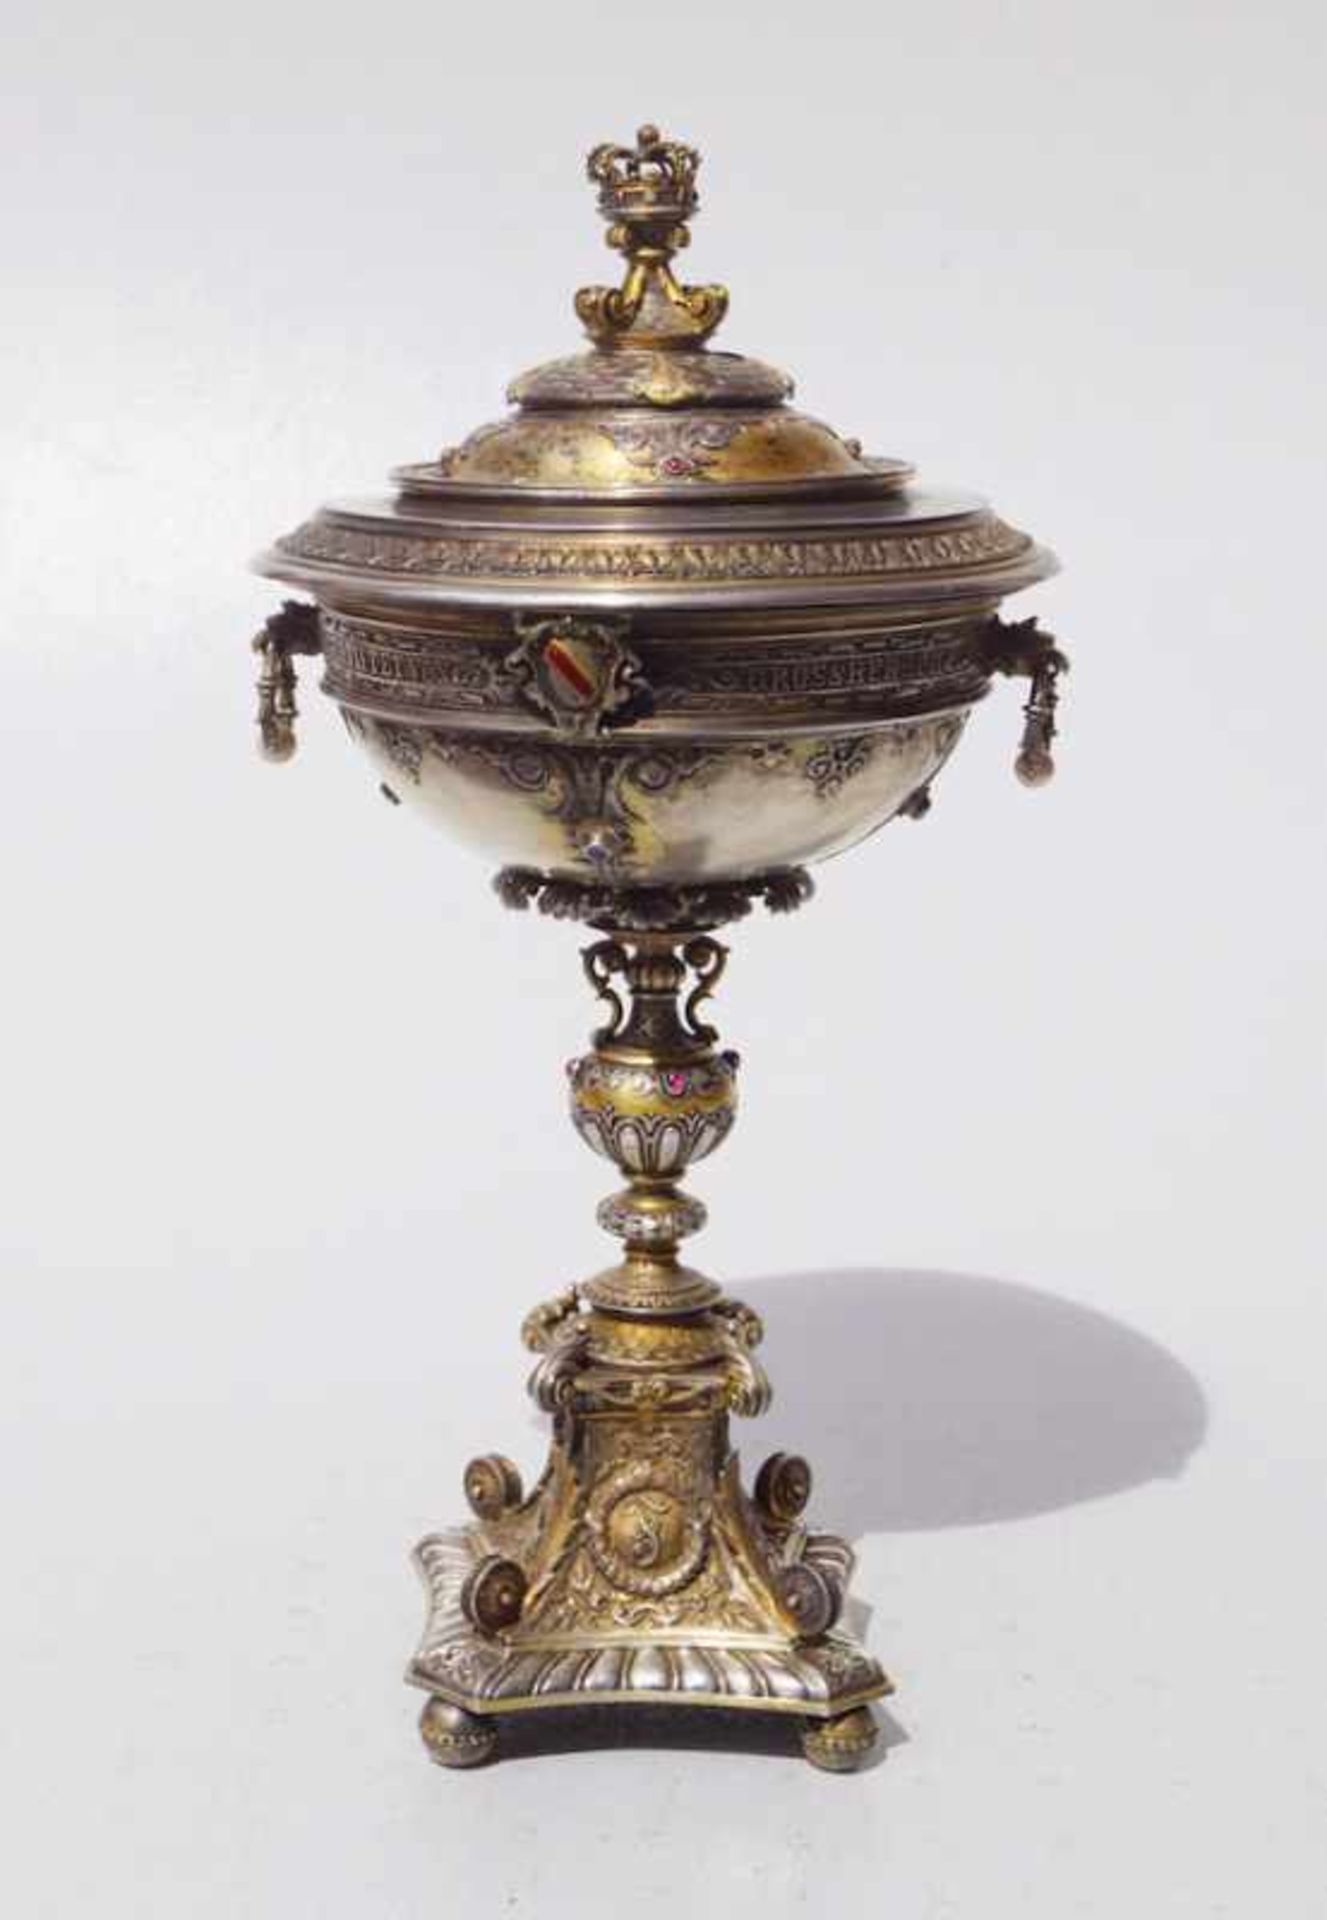 Herrschaftlicher Juwelenbesezter Pokal von Friedrich von Baden 1881 Diplomatengeschenk oder